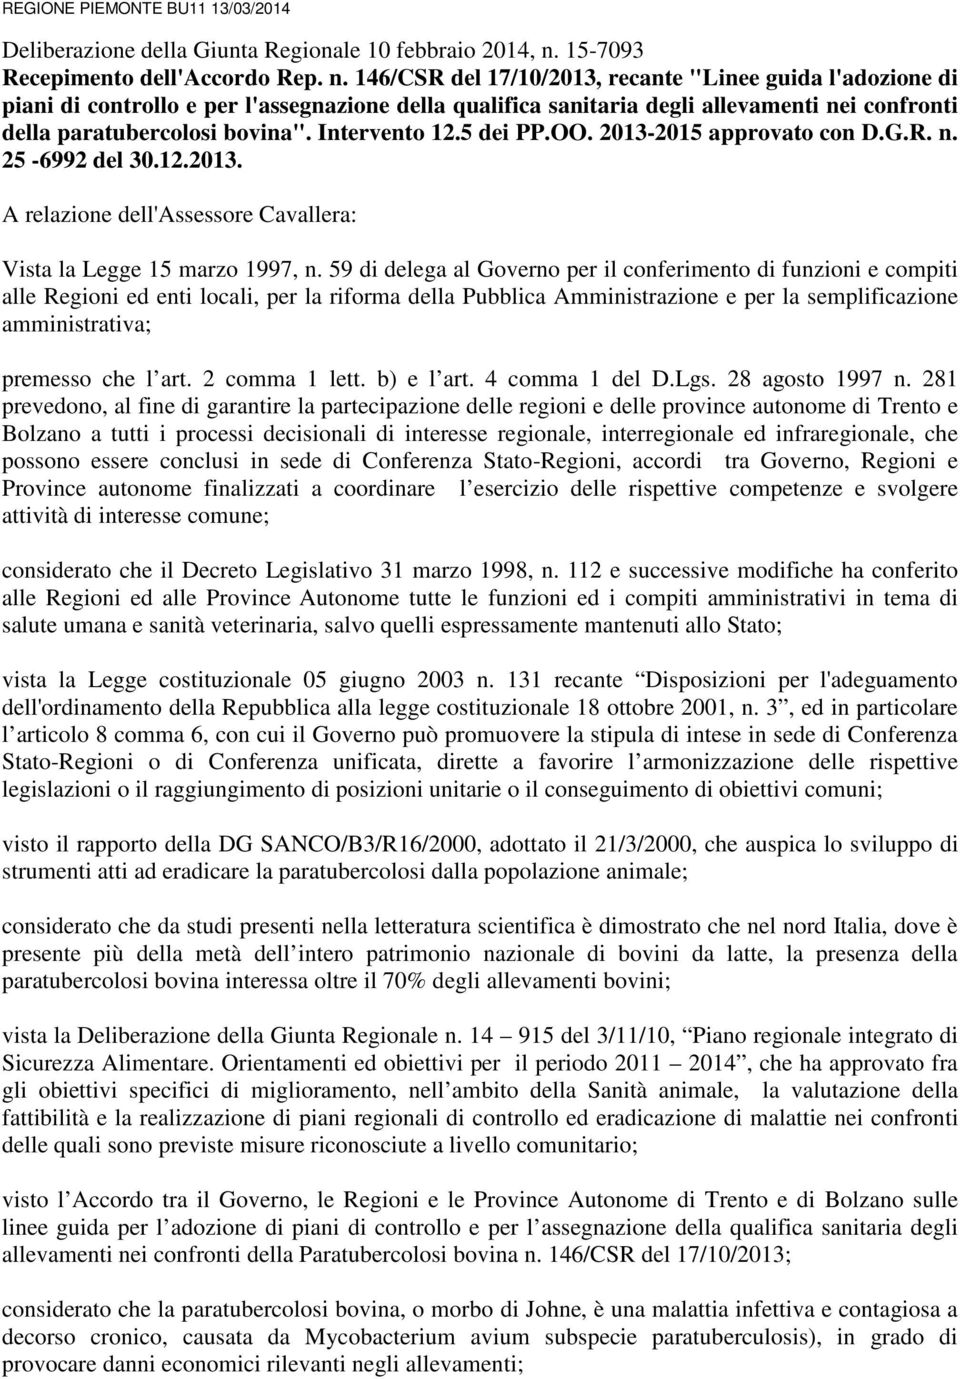 146/CSR del 17/10/2013, recante "Linee guida l'adozione di piani di controllo e per l'assegnazione della qualifica sanitaria degli allevamenti nei confronti della paratubercolosi bovina".